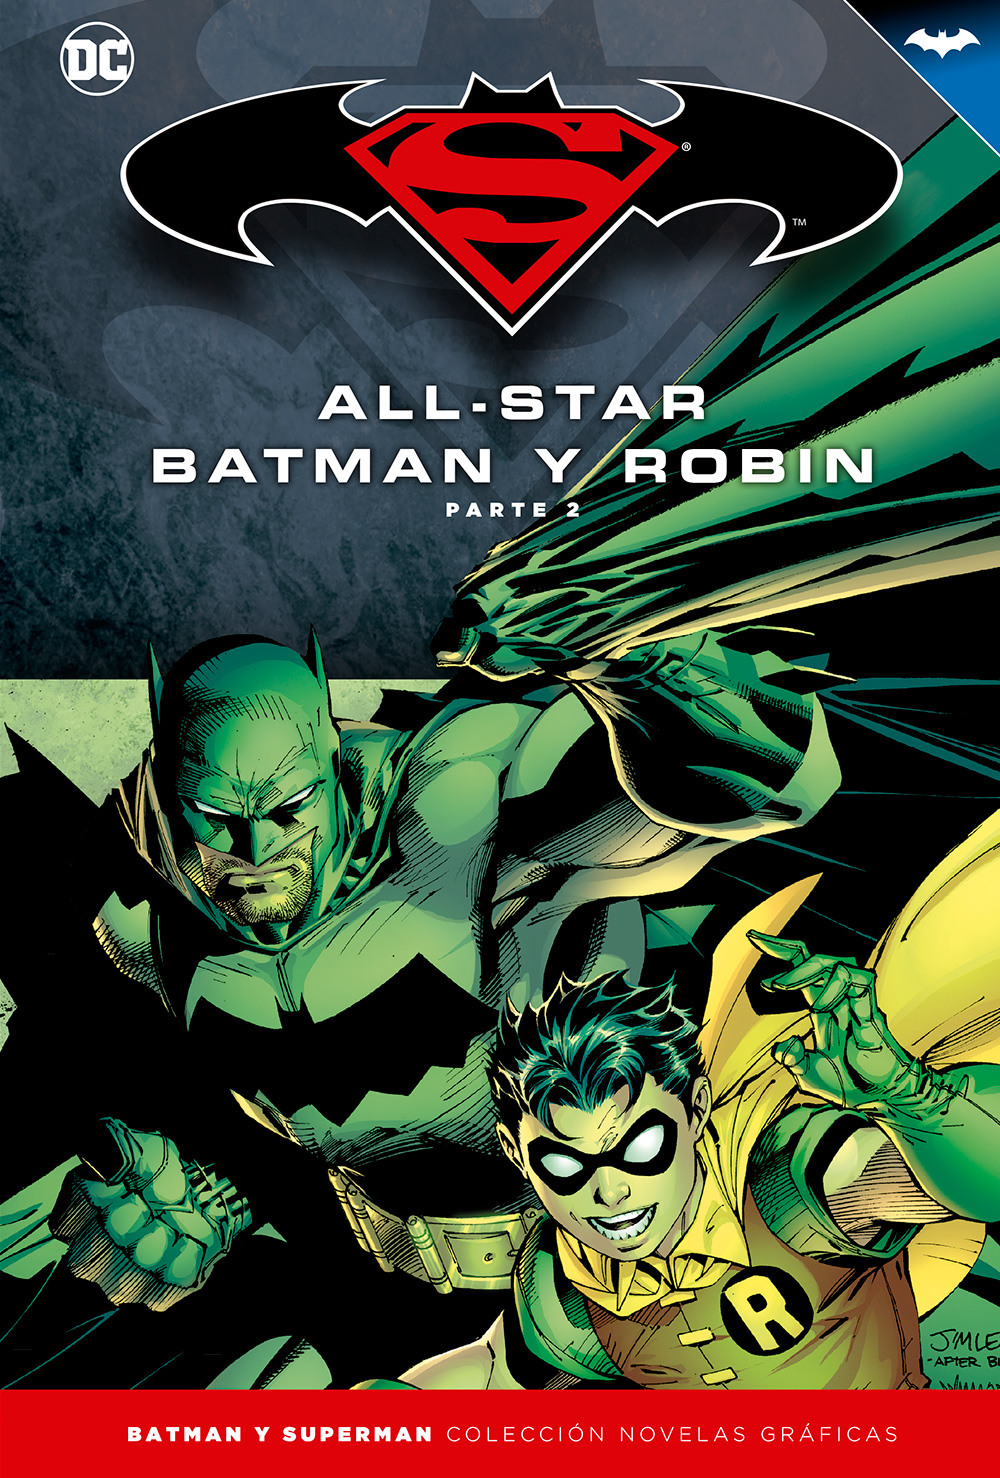 6-10 - [DC - Salvat] Batman y Superman: Colección Novelas Gráficas - Página 3 Portada_BMSM_3_AllStarBatman2